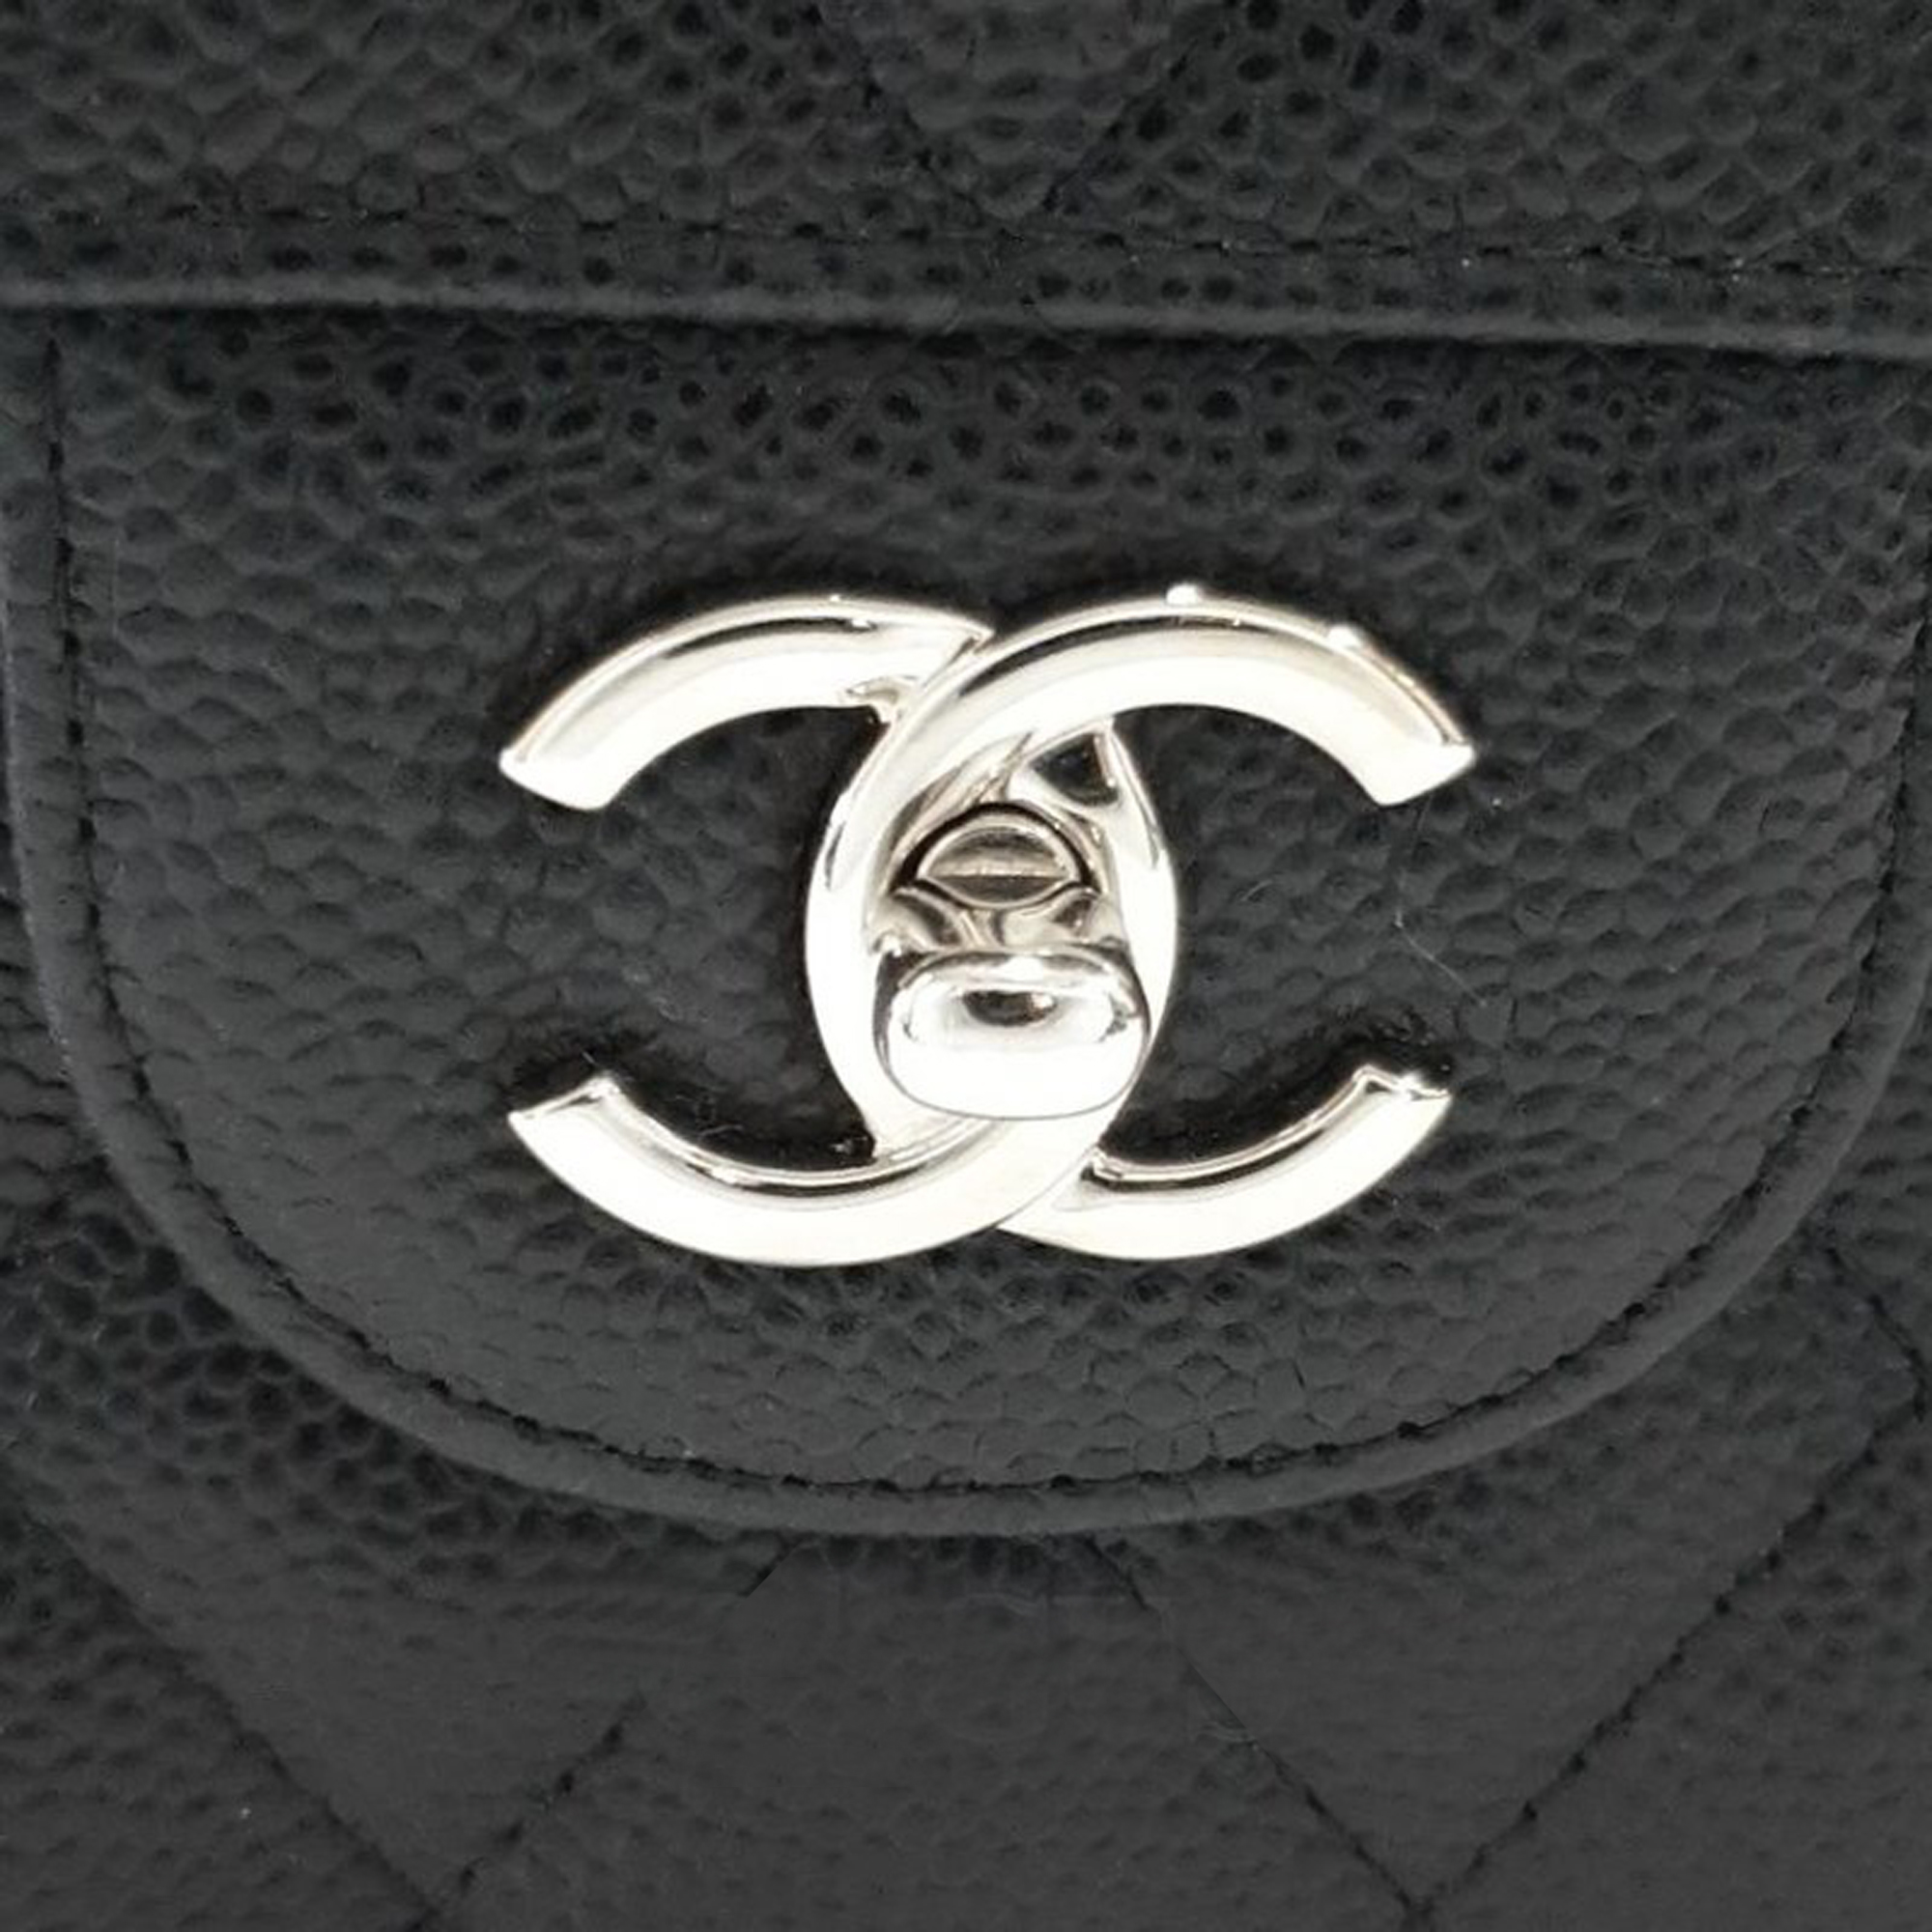 Chanel Classic Flap Bag Bag